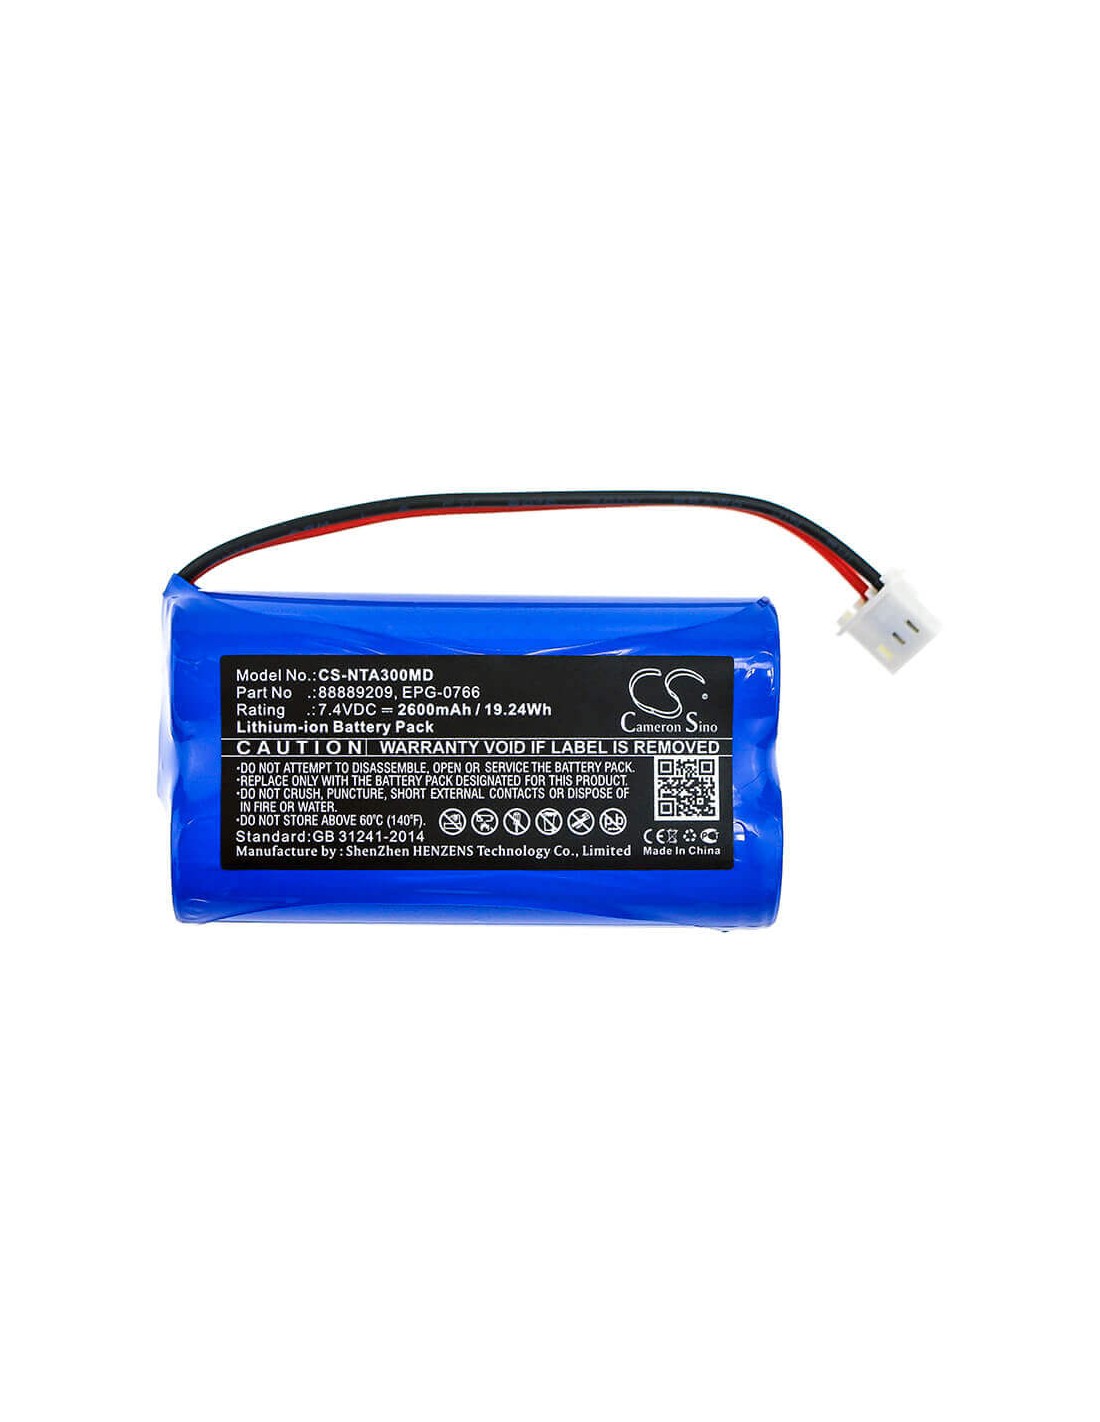 Battery for Natus, Algo 3, Algo 3i, Audiometer Algo 3 7.4V, 2600mAh - 19.24Wh